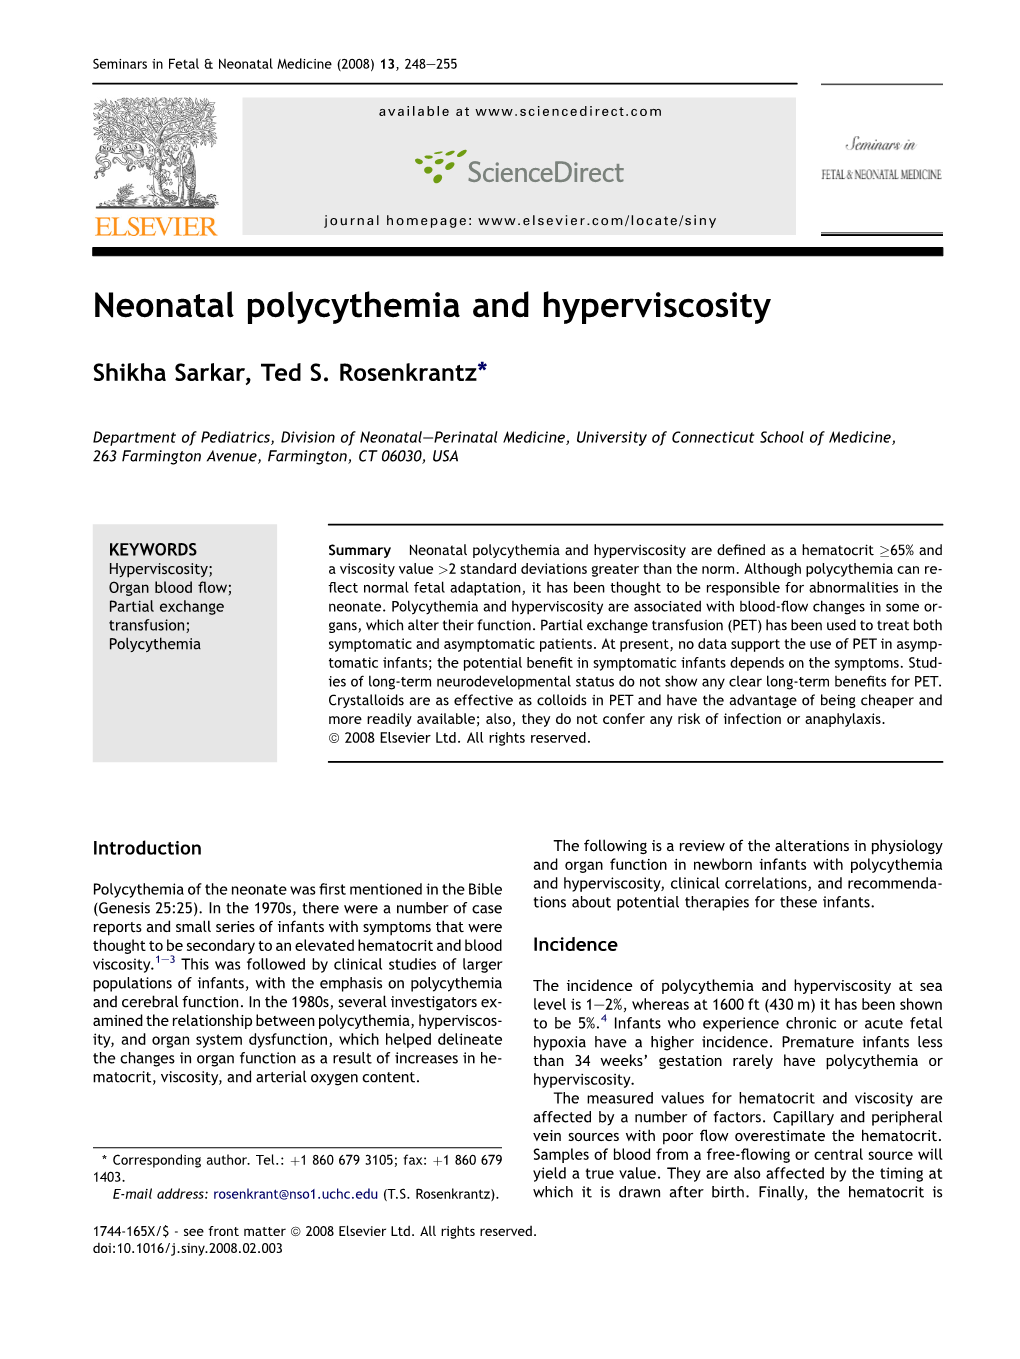 Neonatal Polycythemia and Hyperviscosity